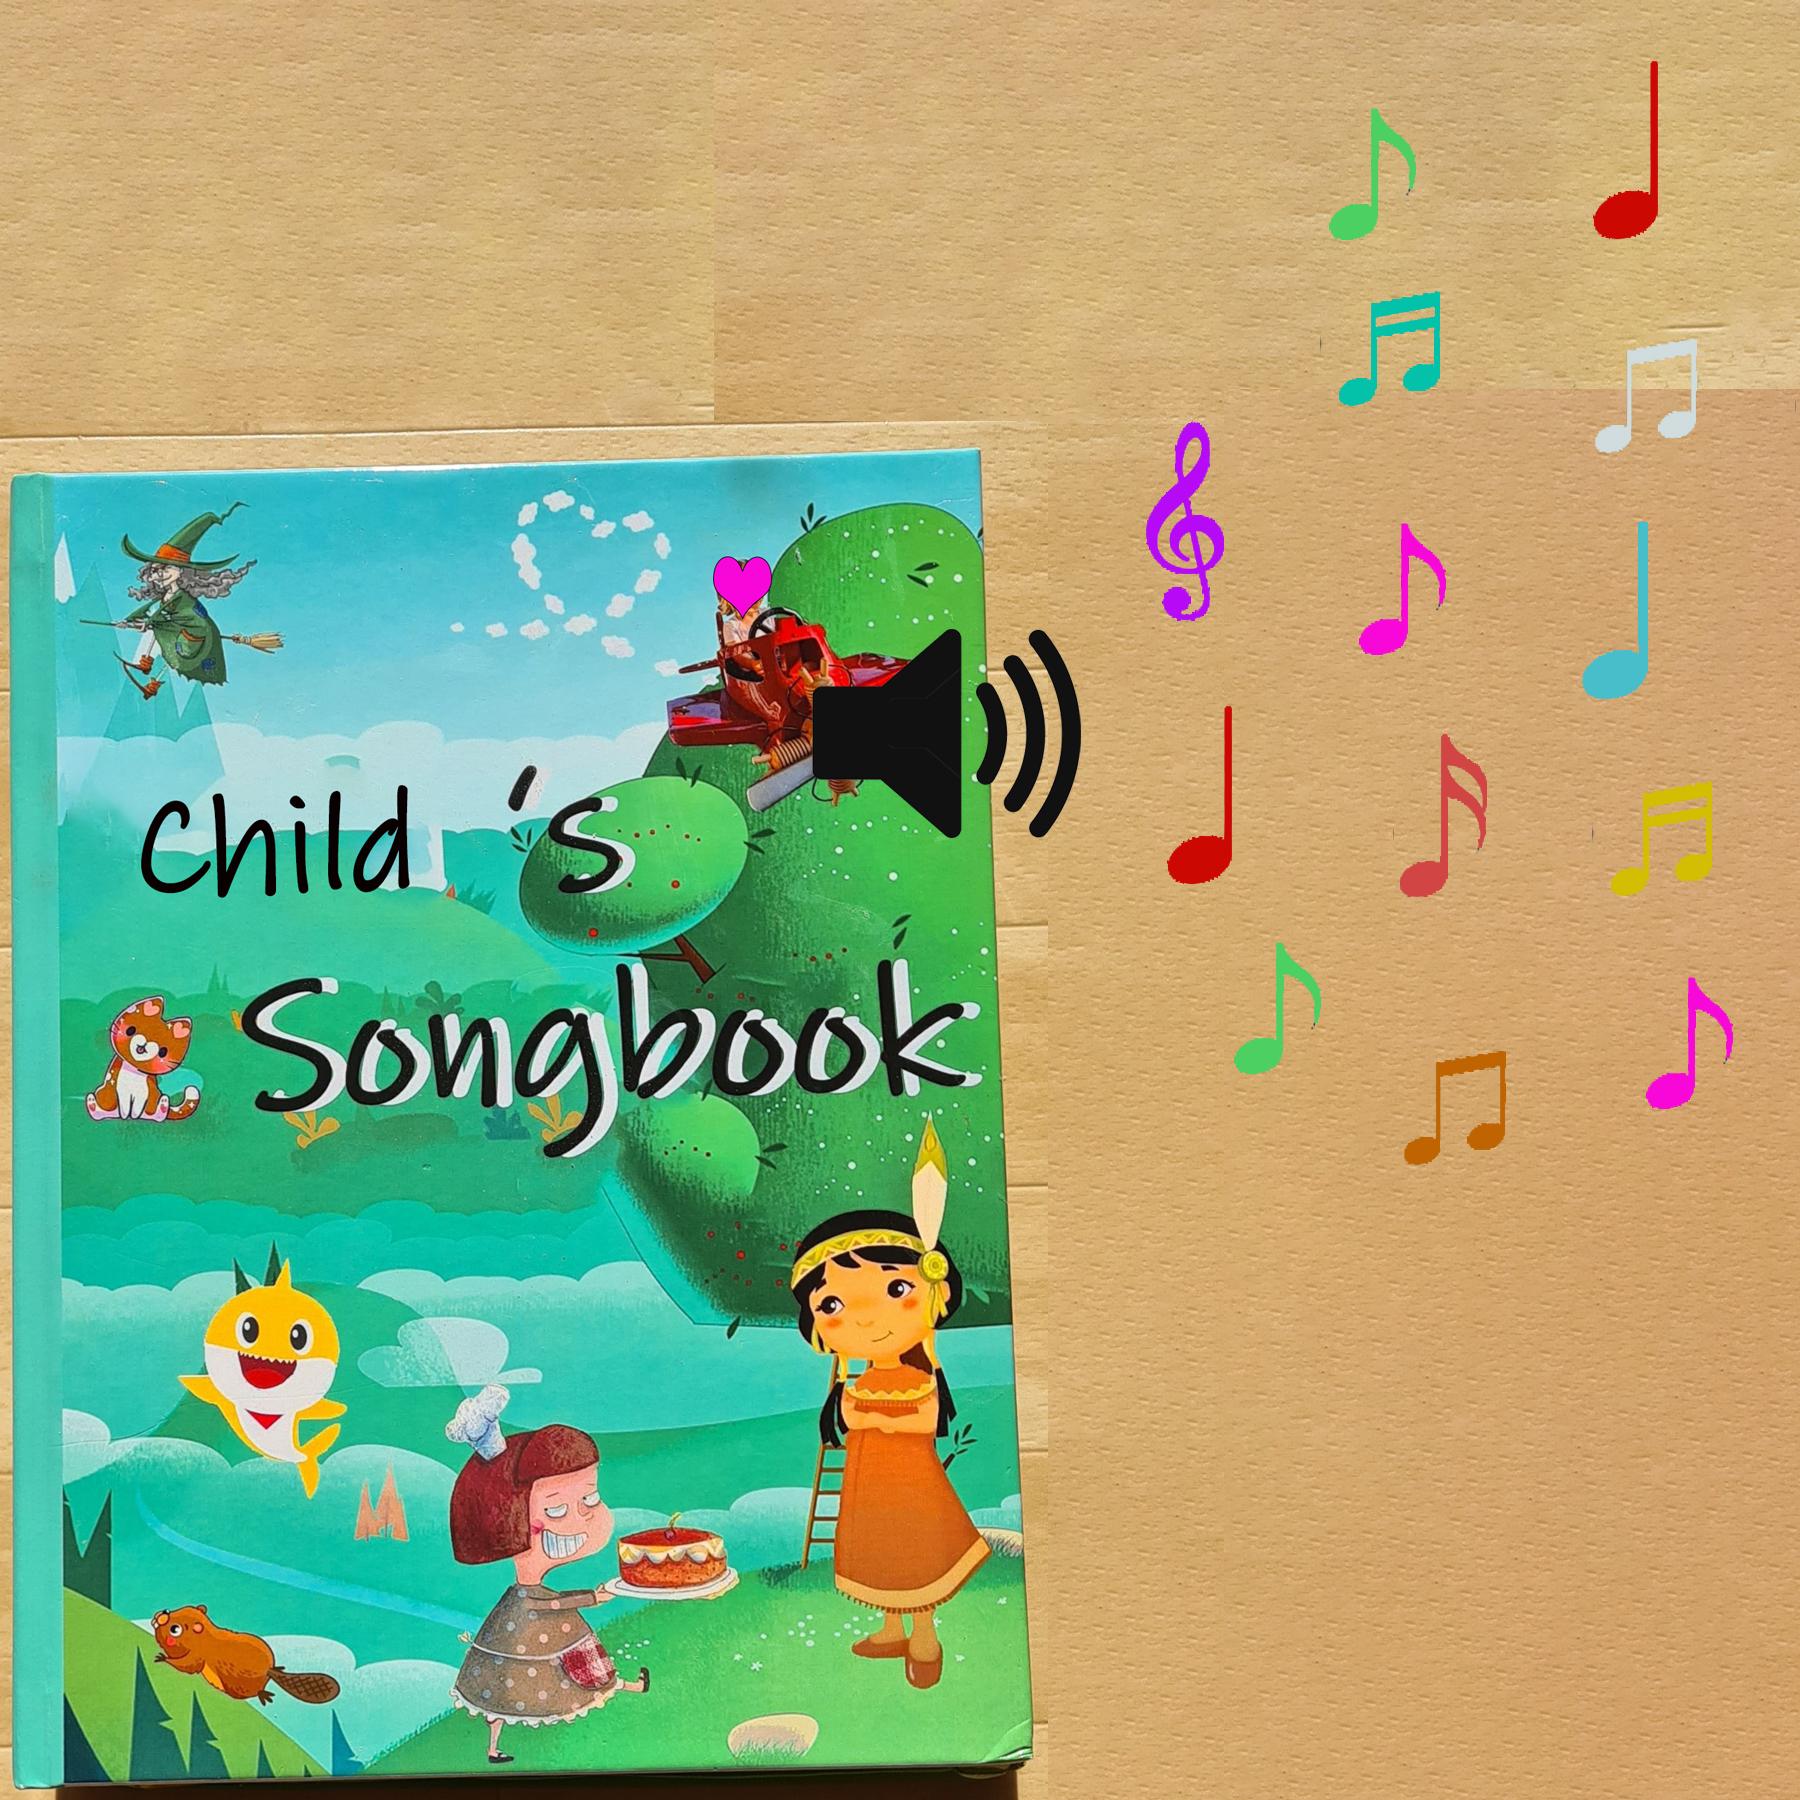 Child Singingbook